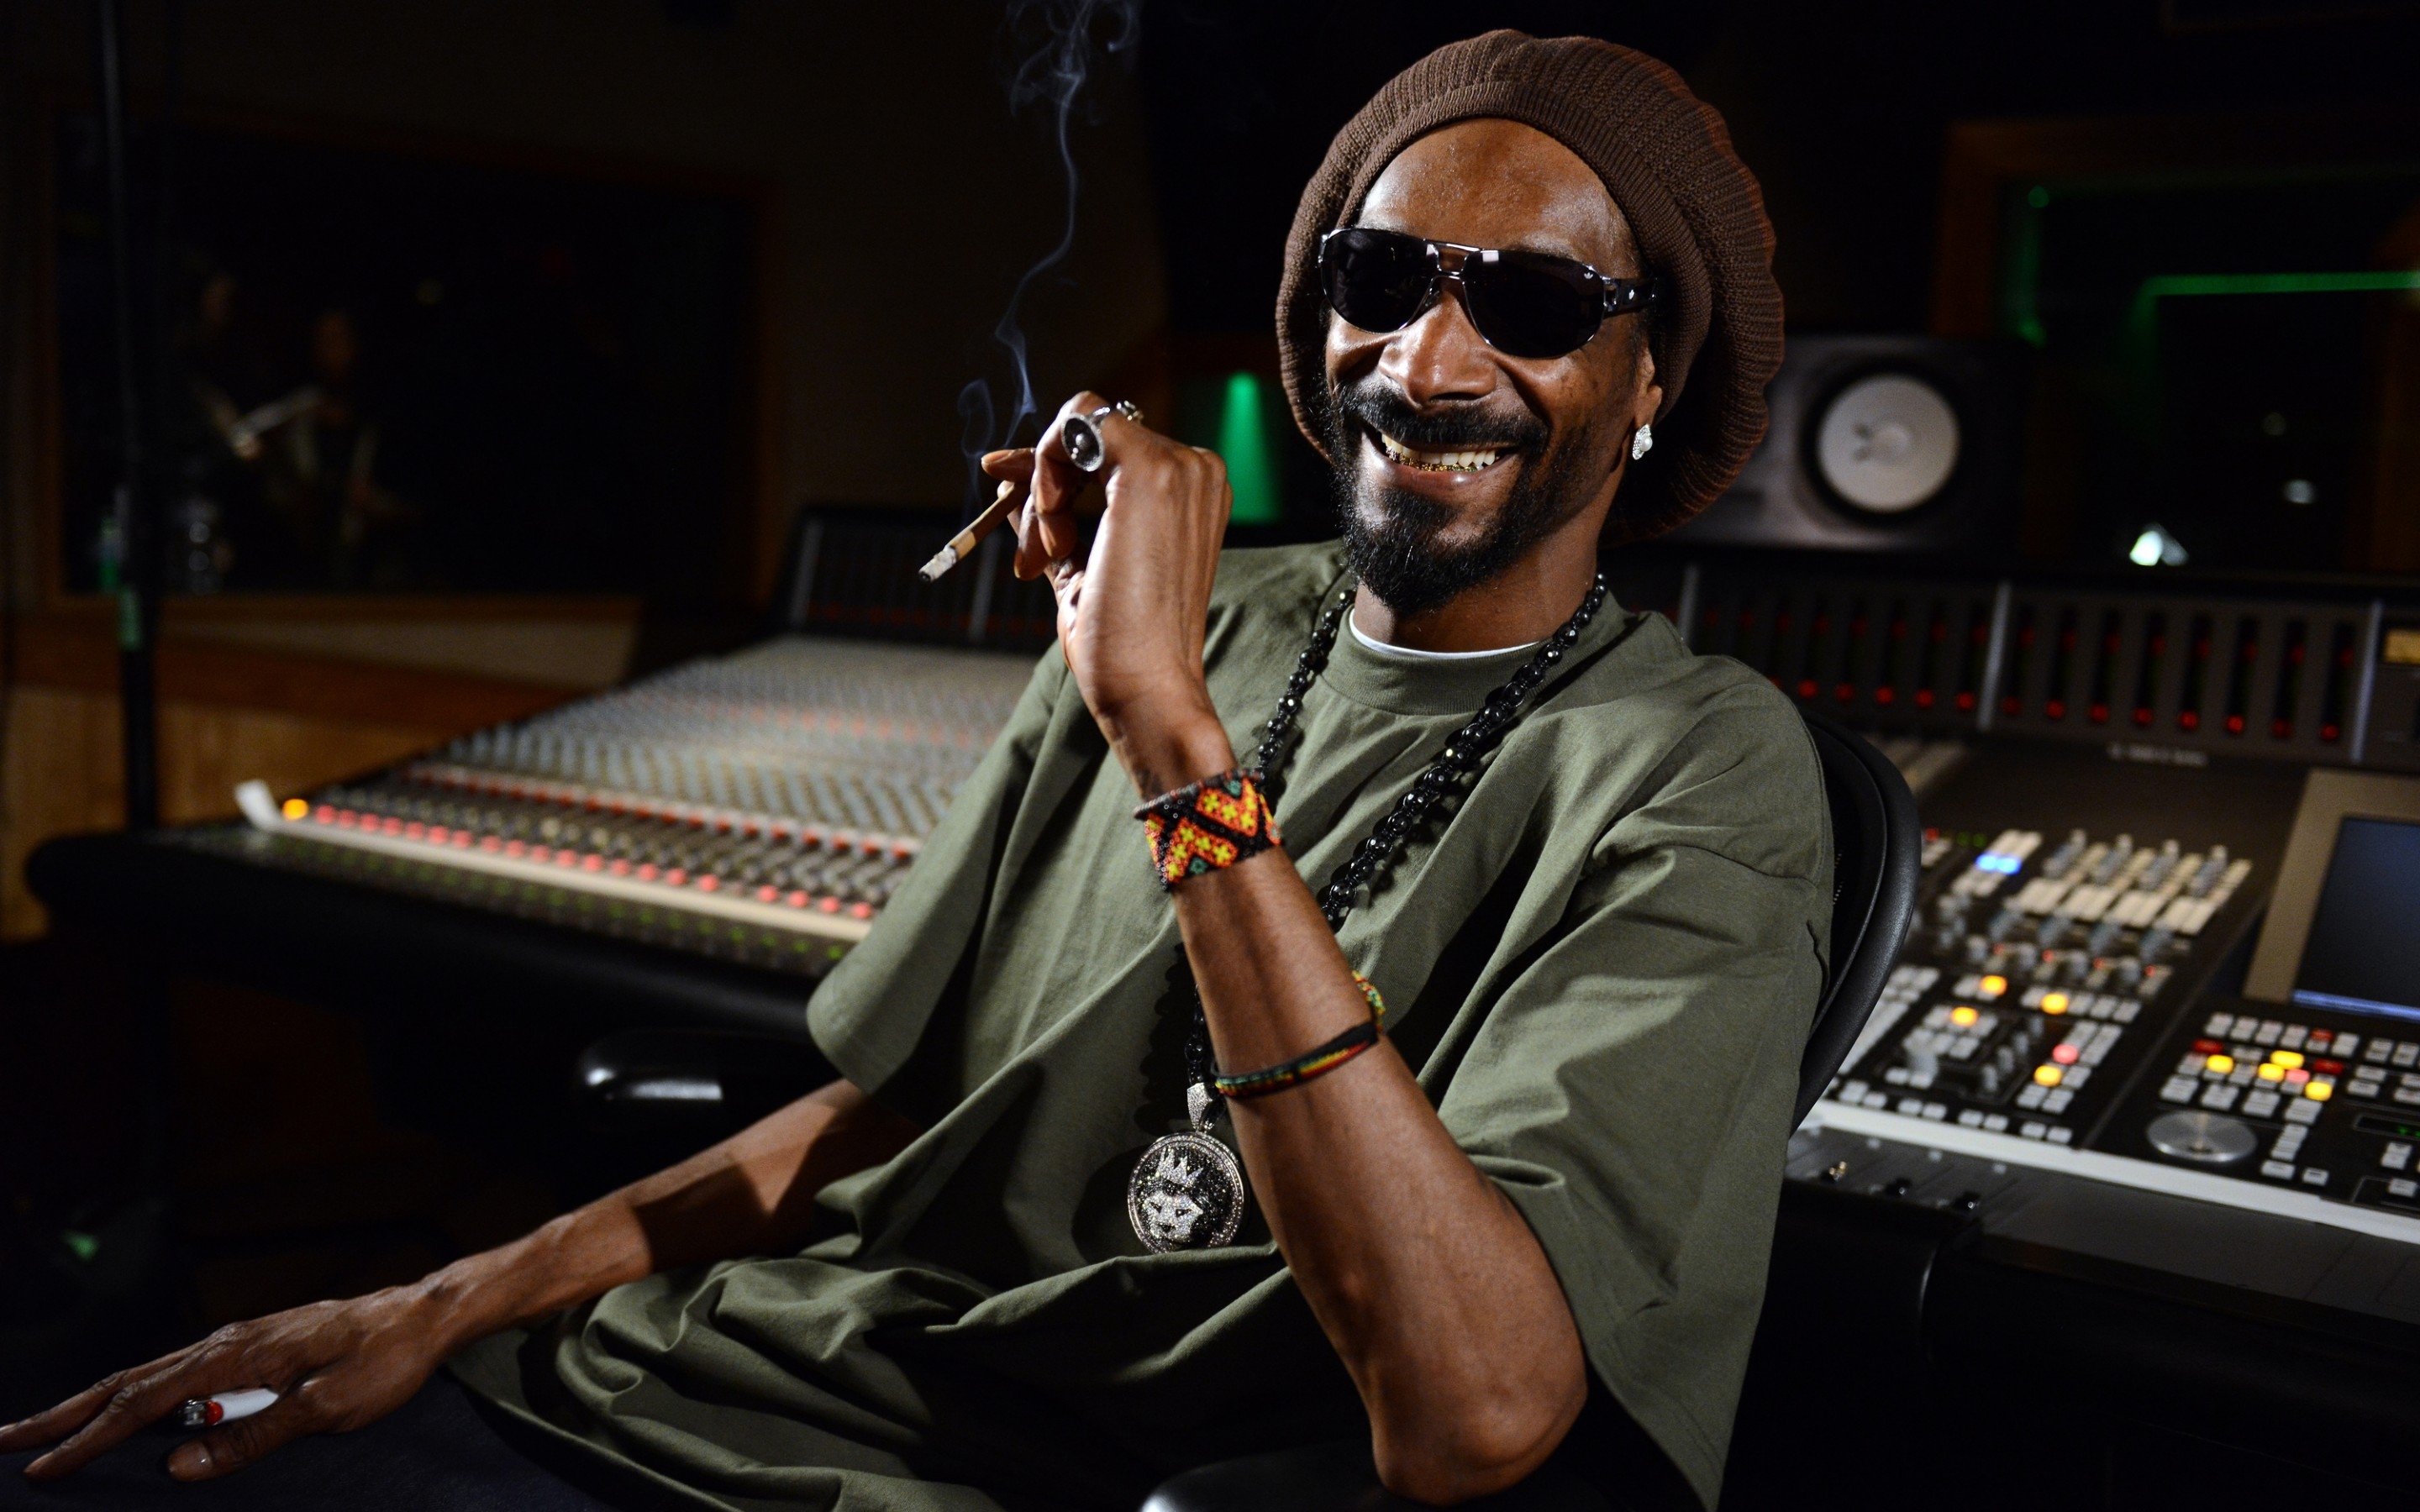 Snoop Dogg Smile for 2880 x 1800 Retina Display resolution